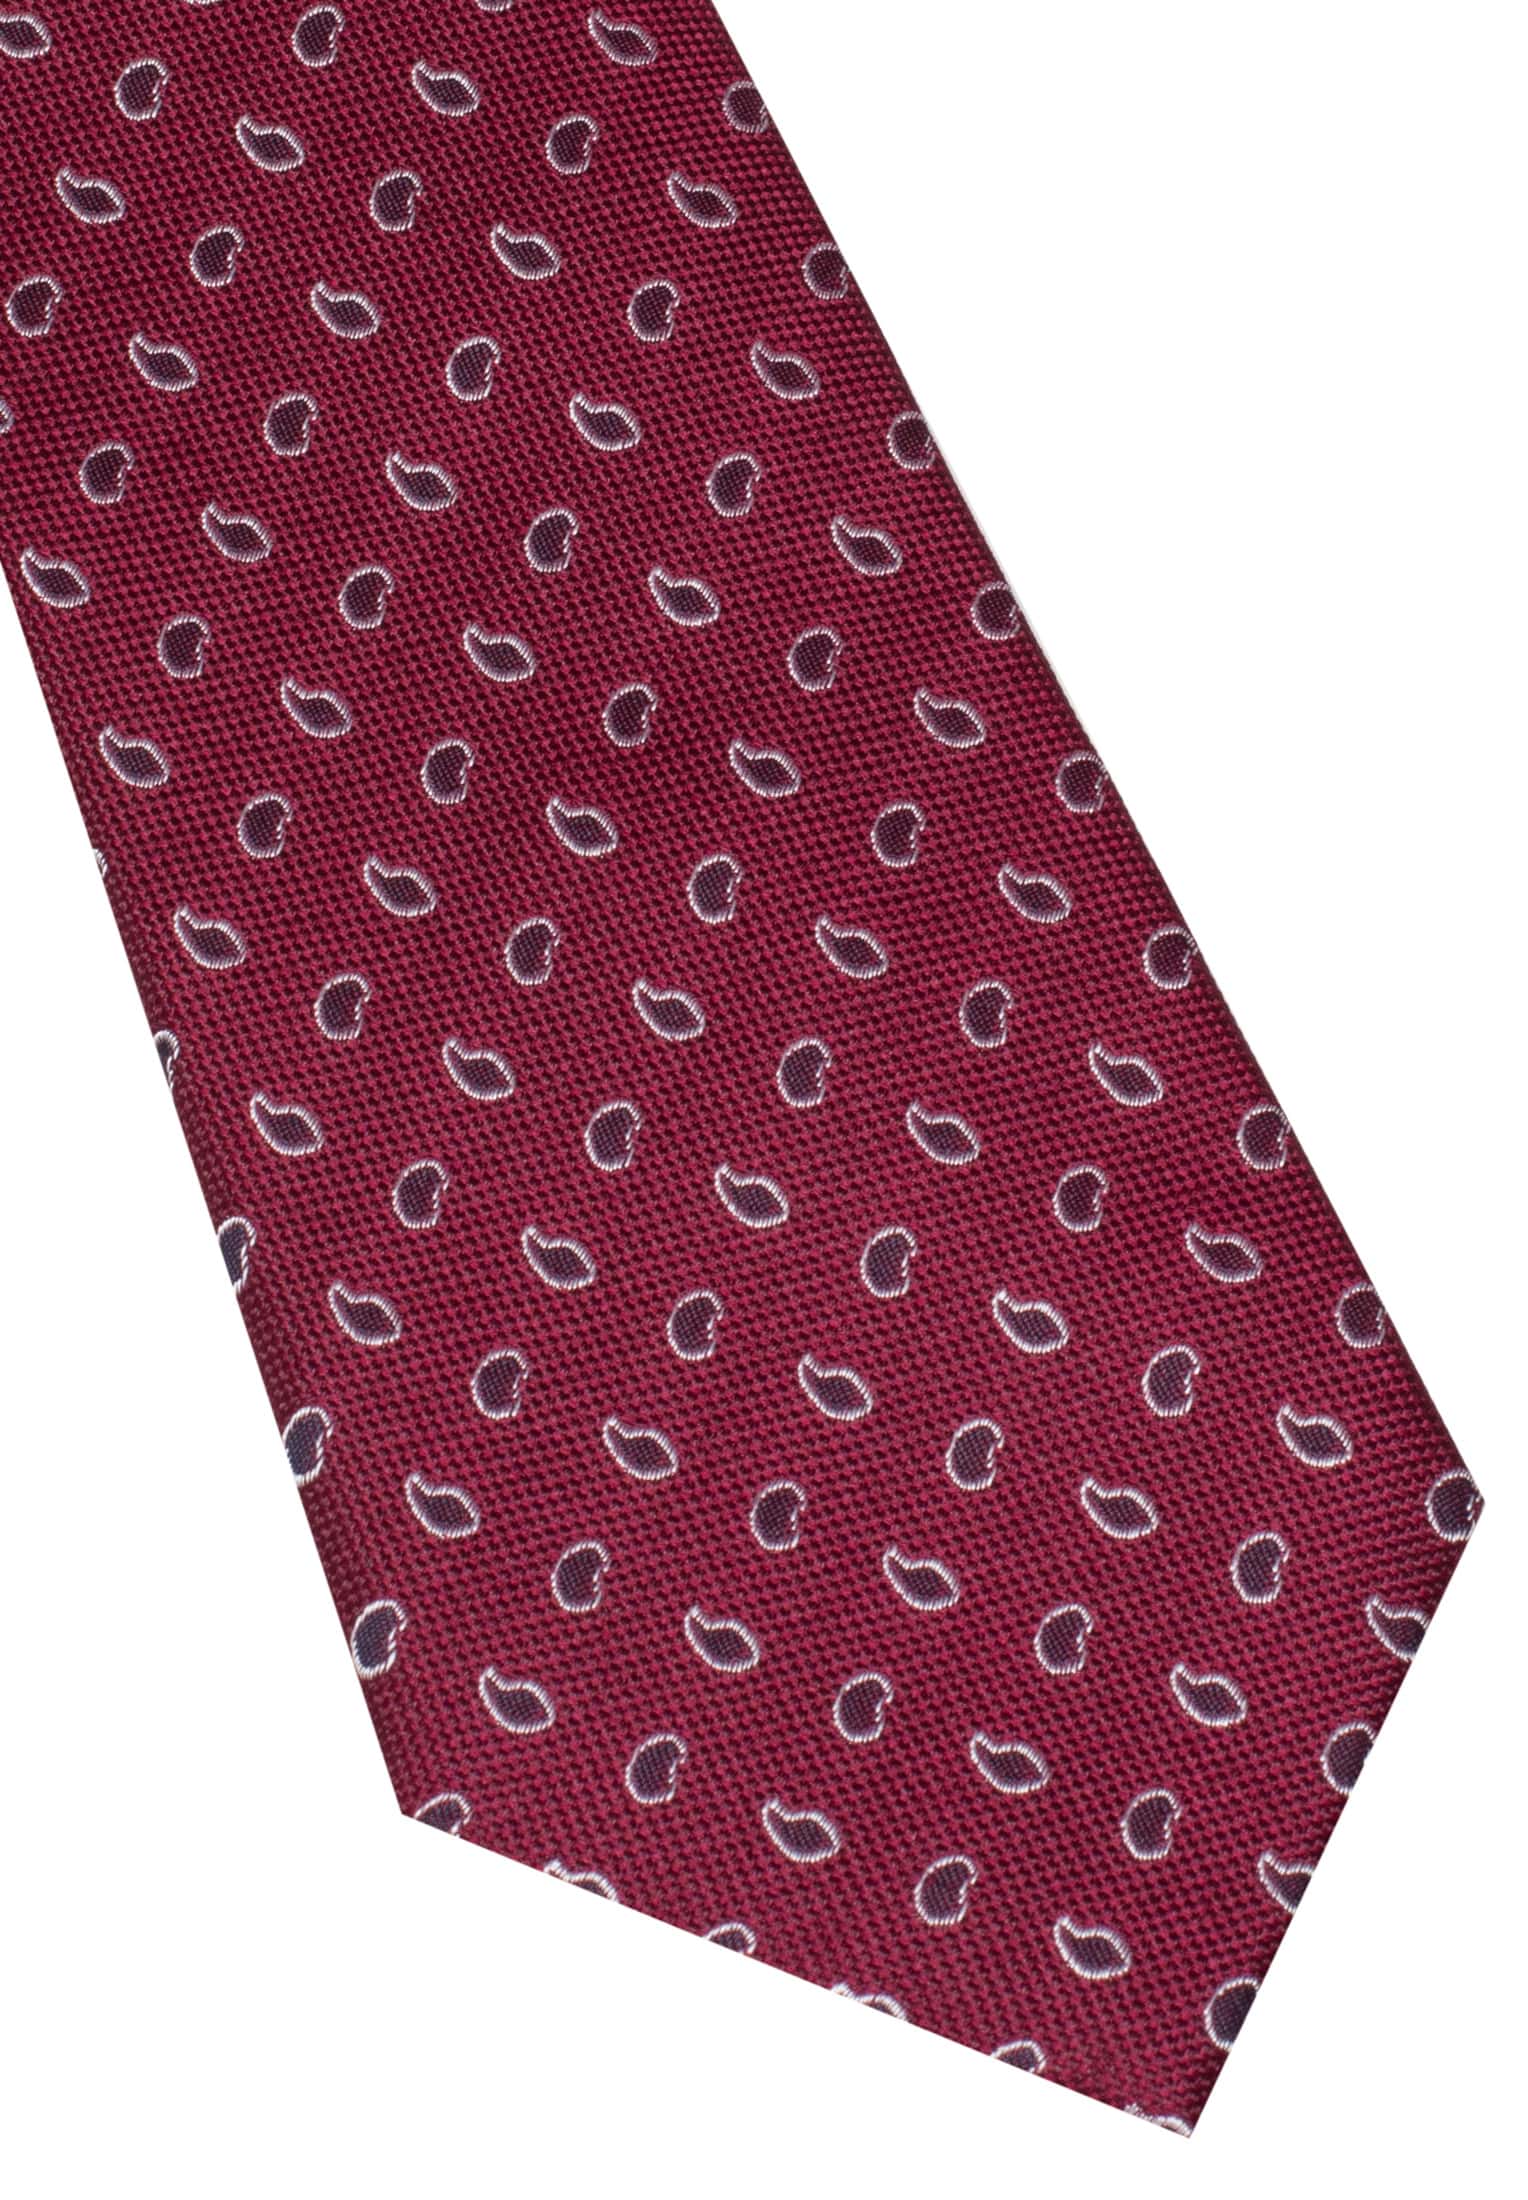 Tie in bordeaux patterned